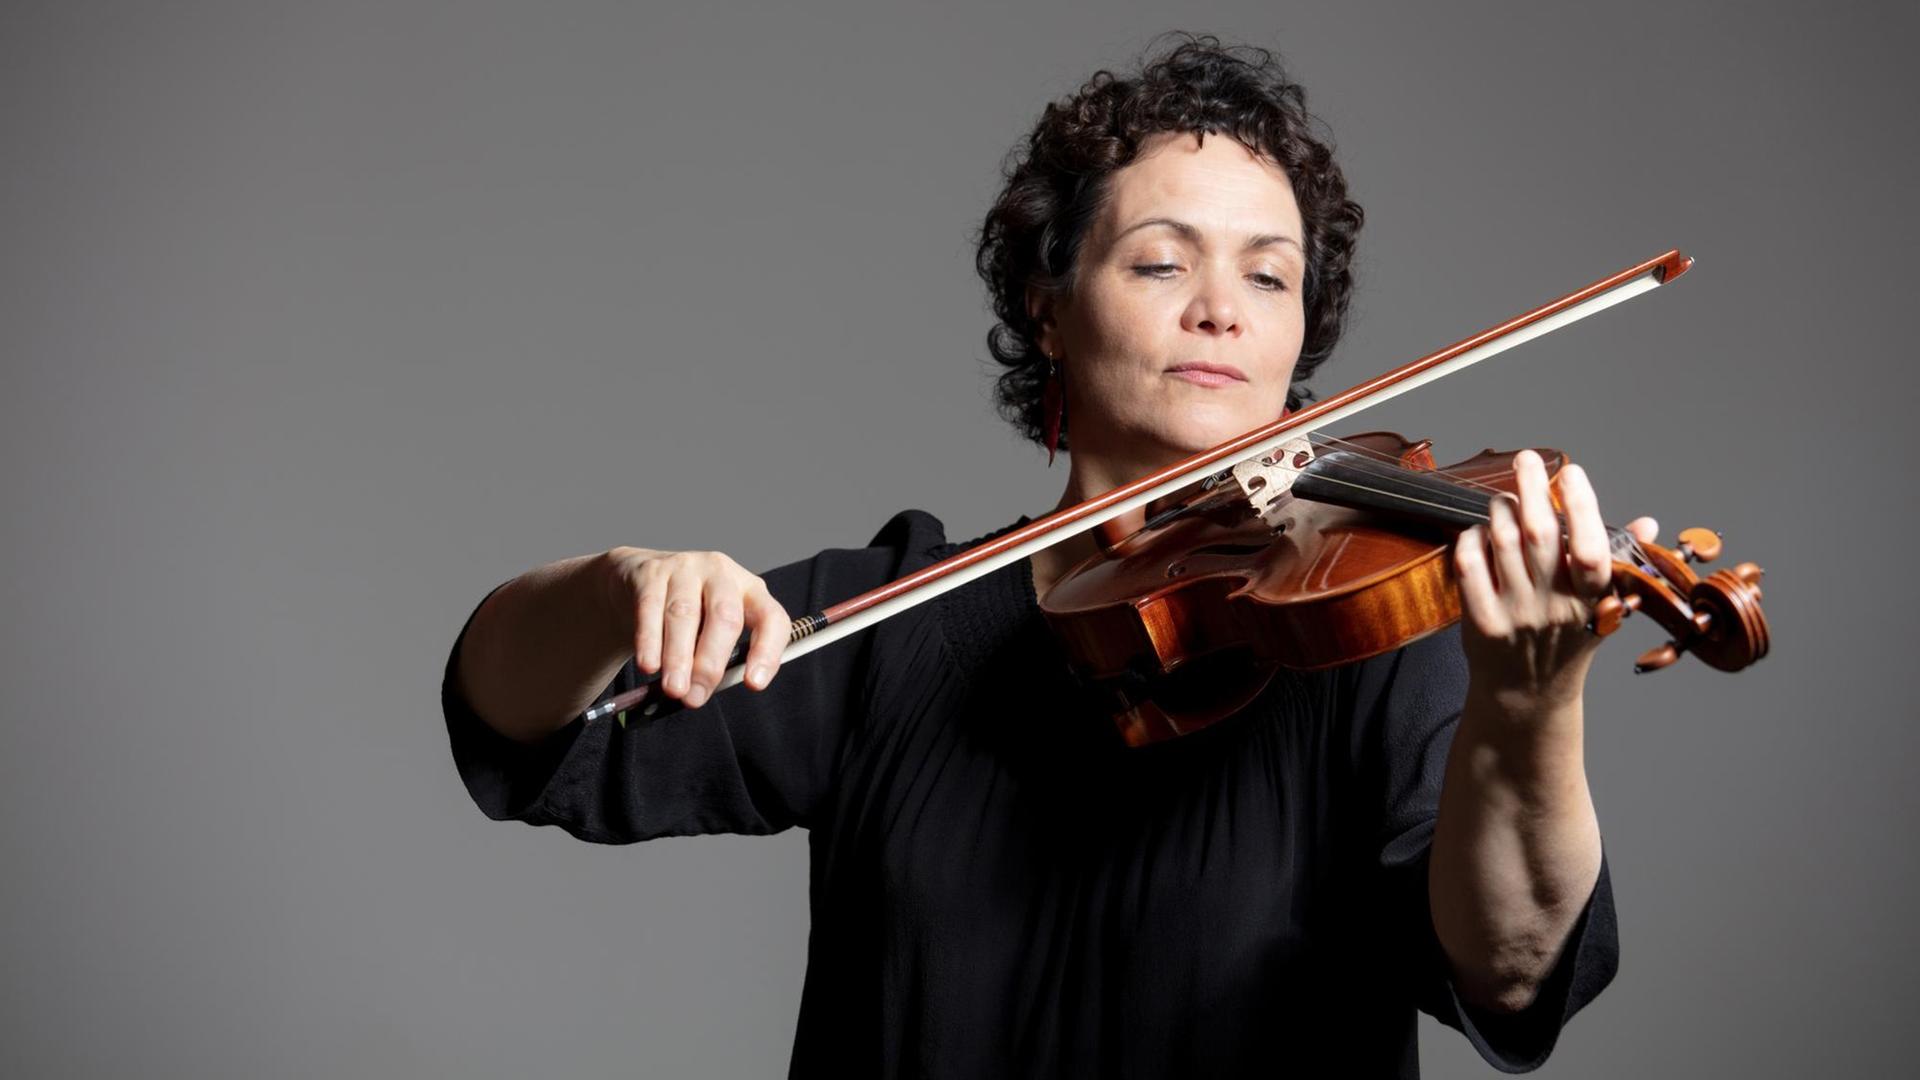 Eine Frau spielt vor einem grauen Hintergrund auf ihrer Geige und schaut auf die Saiten.